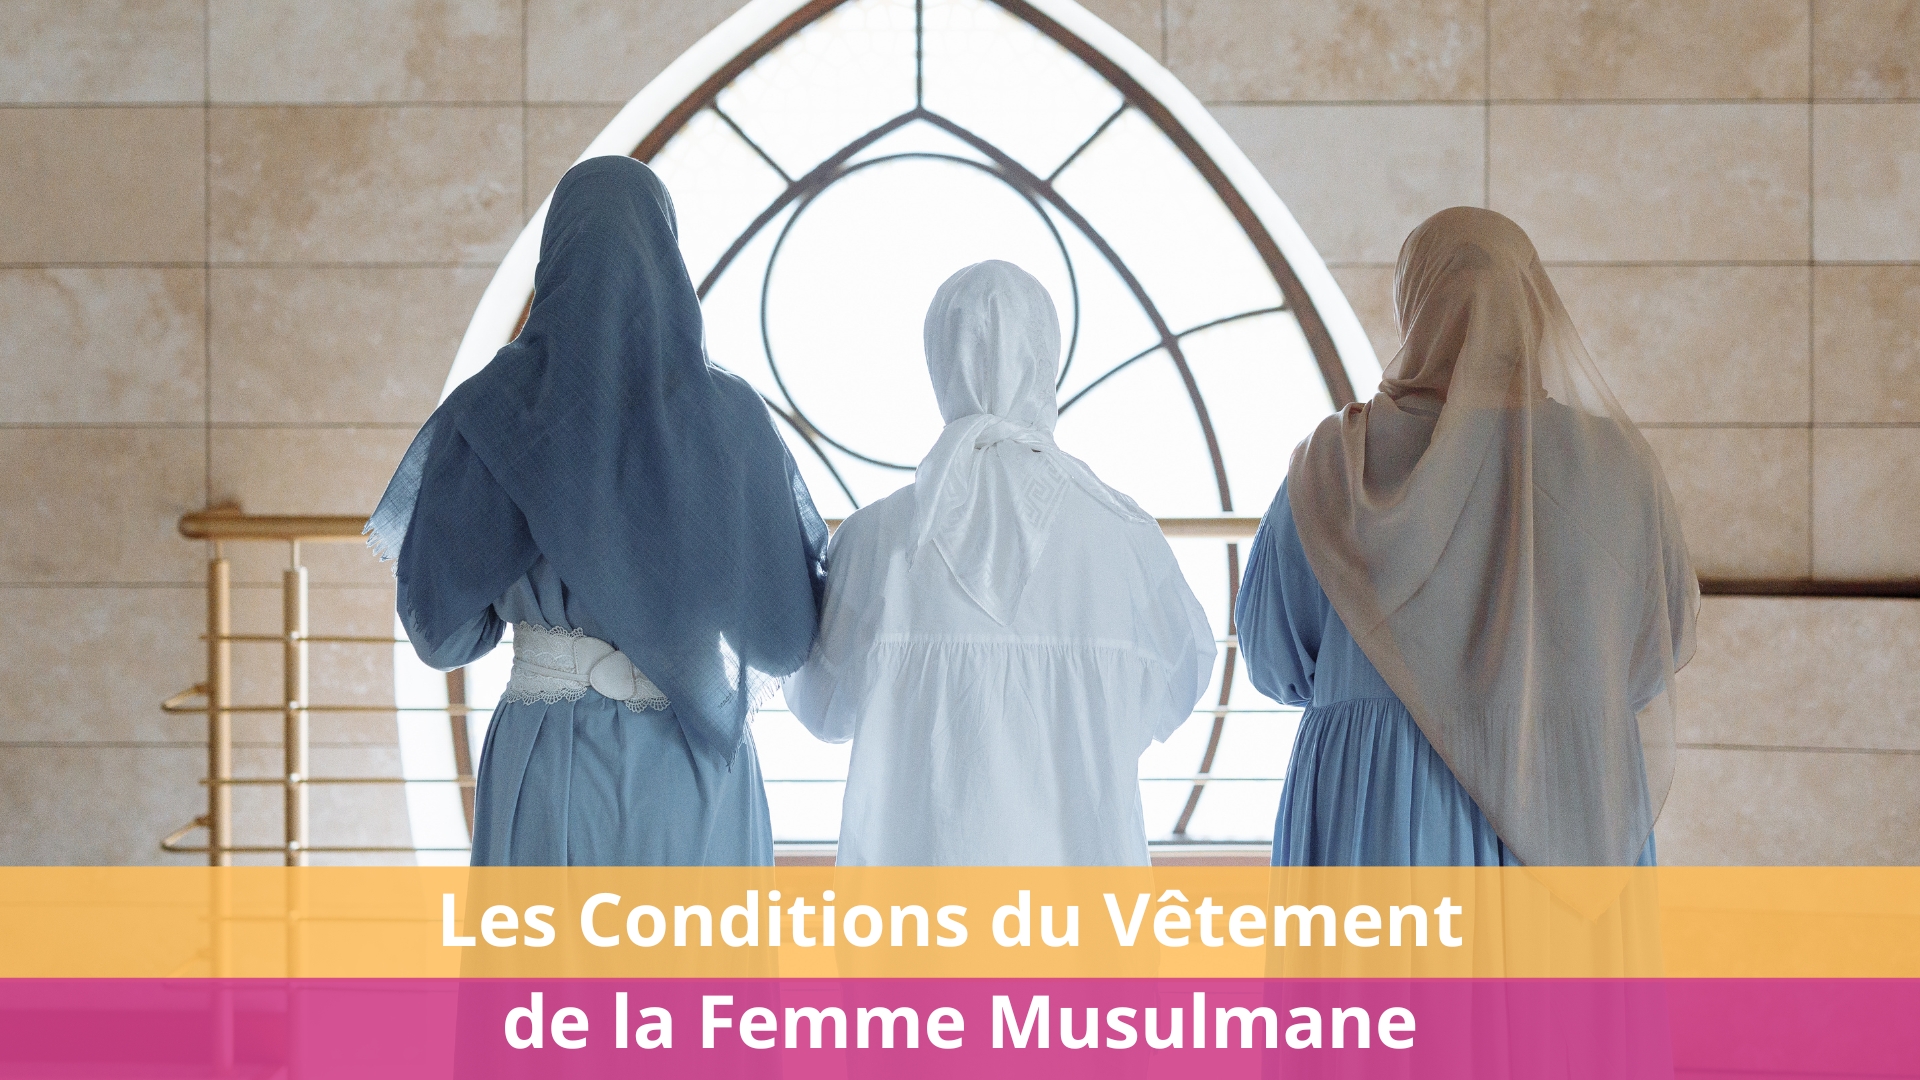 Les Conditions du Vêtement de la Femme Musulmane en Islam